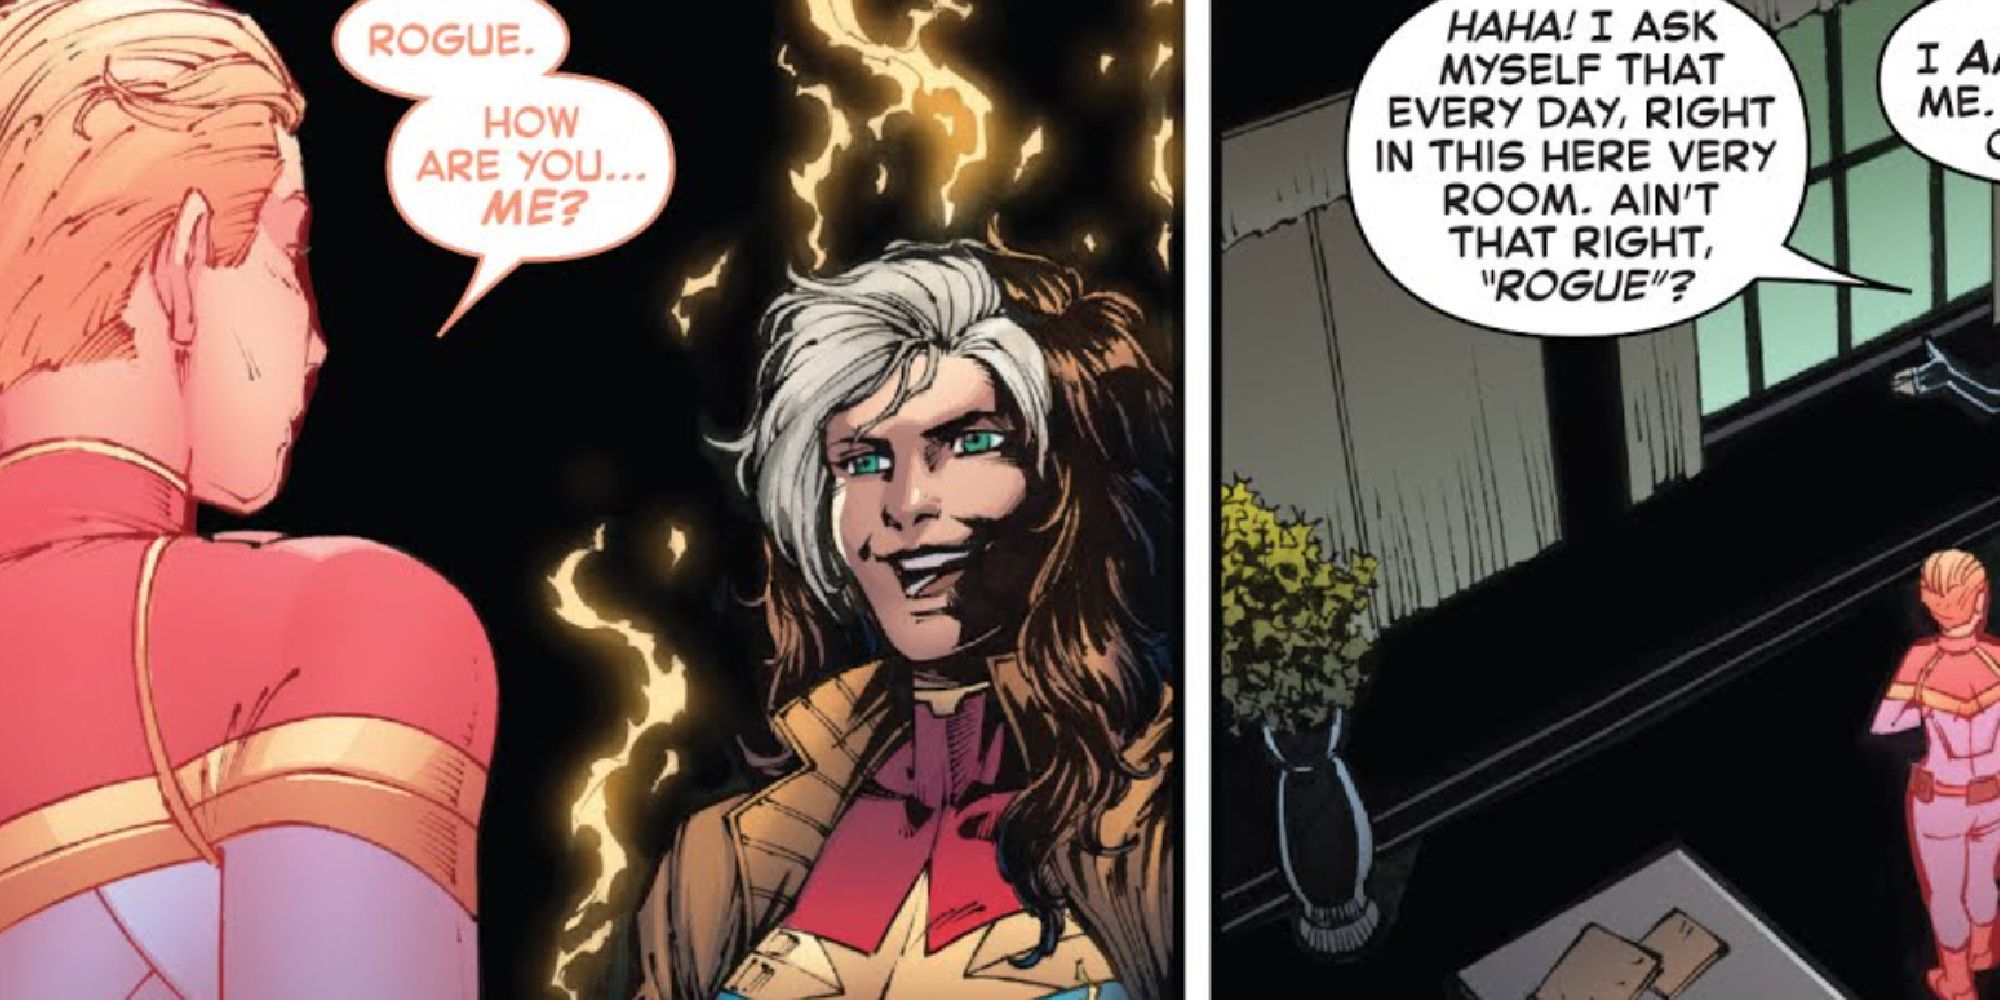 Carol Danvers meets a Rogue Captain Marvel in Marvel Comics.